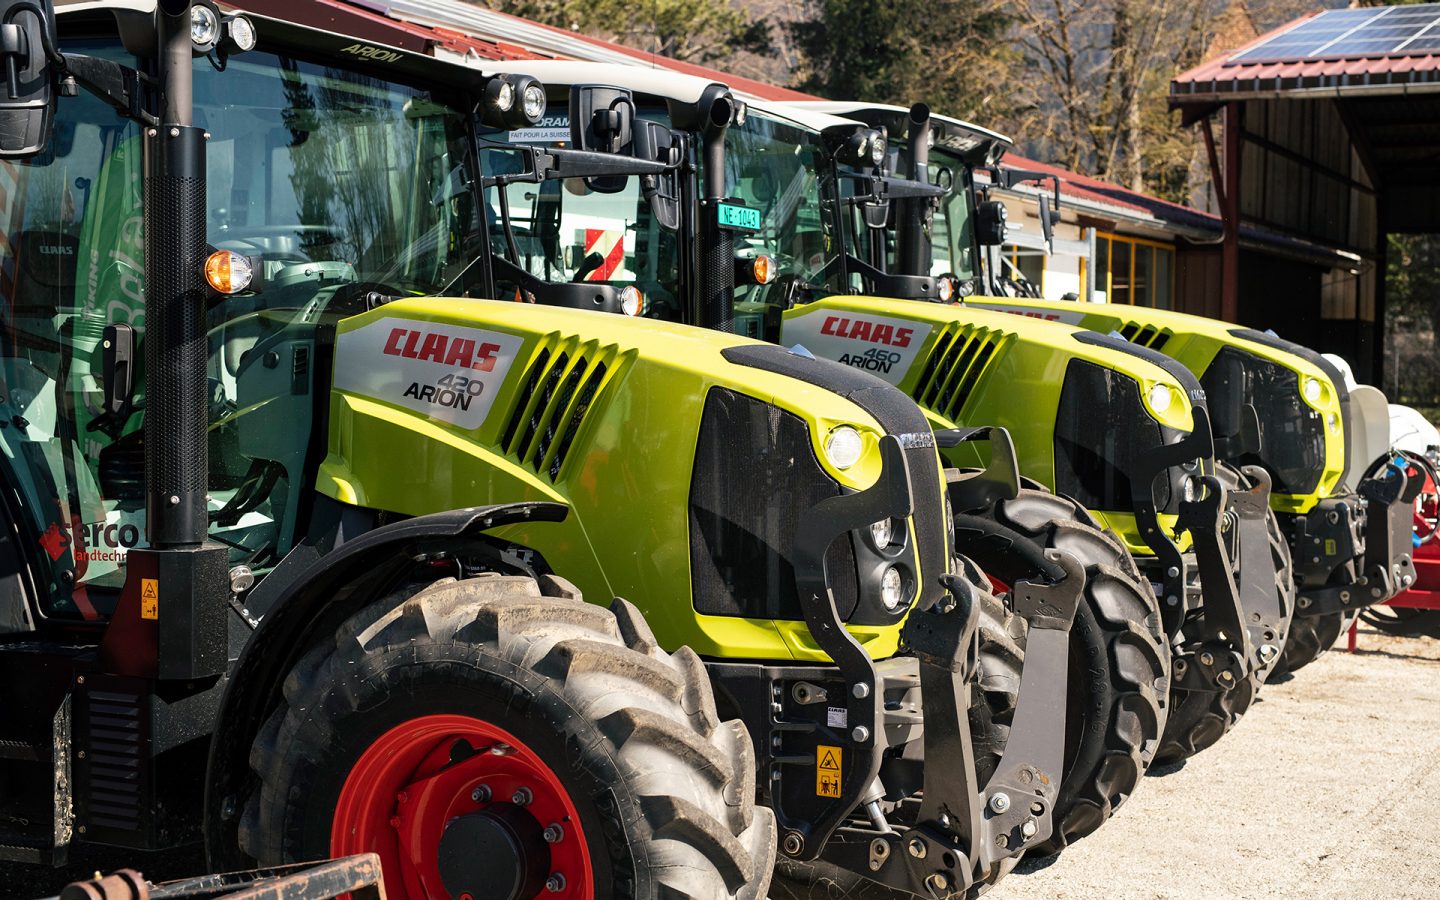 Jeanneret Hydro Mécanique vend et répare des tracteurs et engins agricoles de toute sorte. C'est une véritable bénédiction pour les agriculteurs du Val-de-Travers, dans le canton de Neuchâtel.